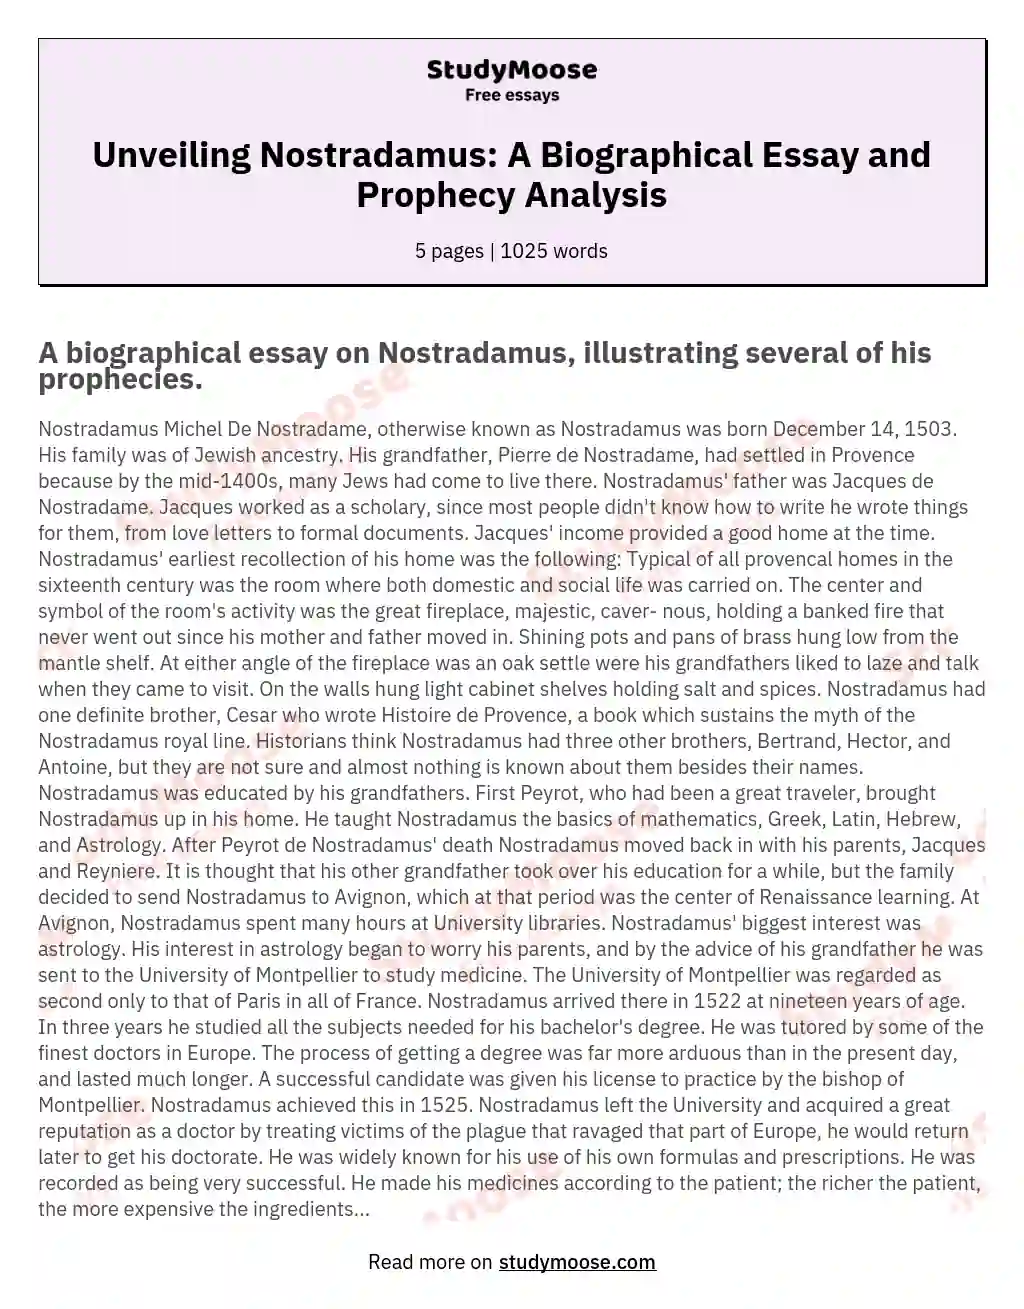 Unveiling Nostradamus: A Biographical Essay and Prophecy Analysis essay